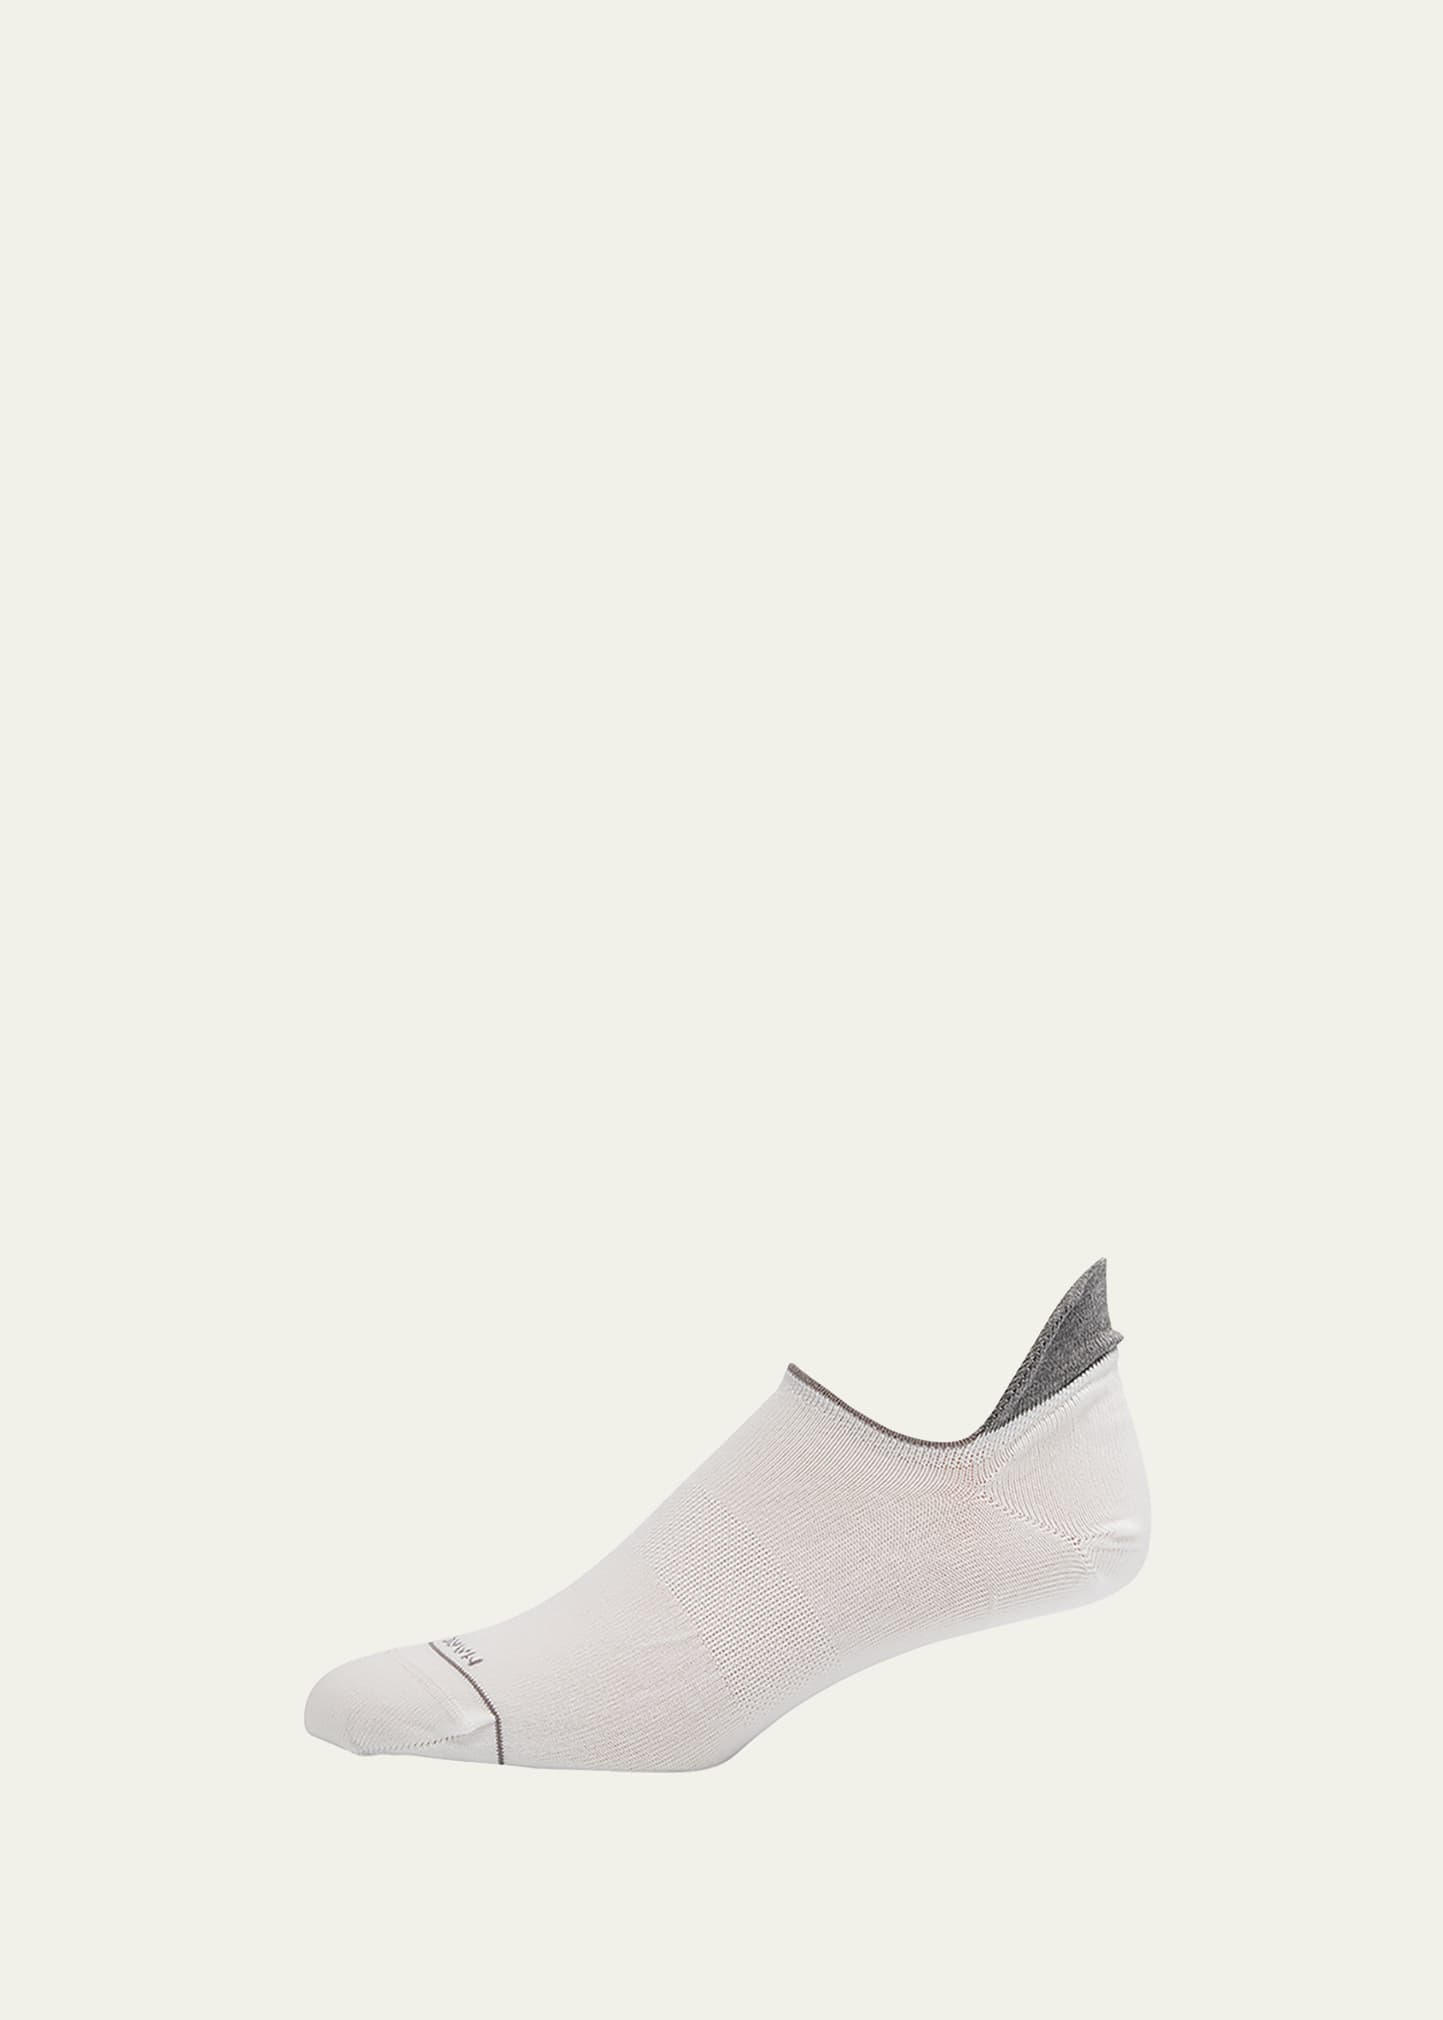 Marcoliani Men's No-show Sneaker Socks In White